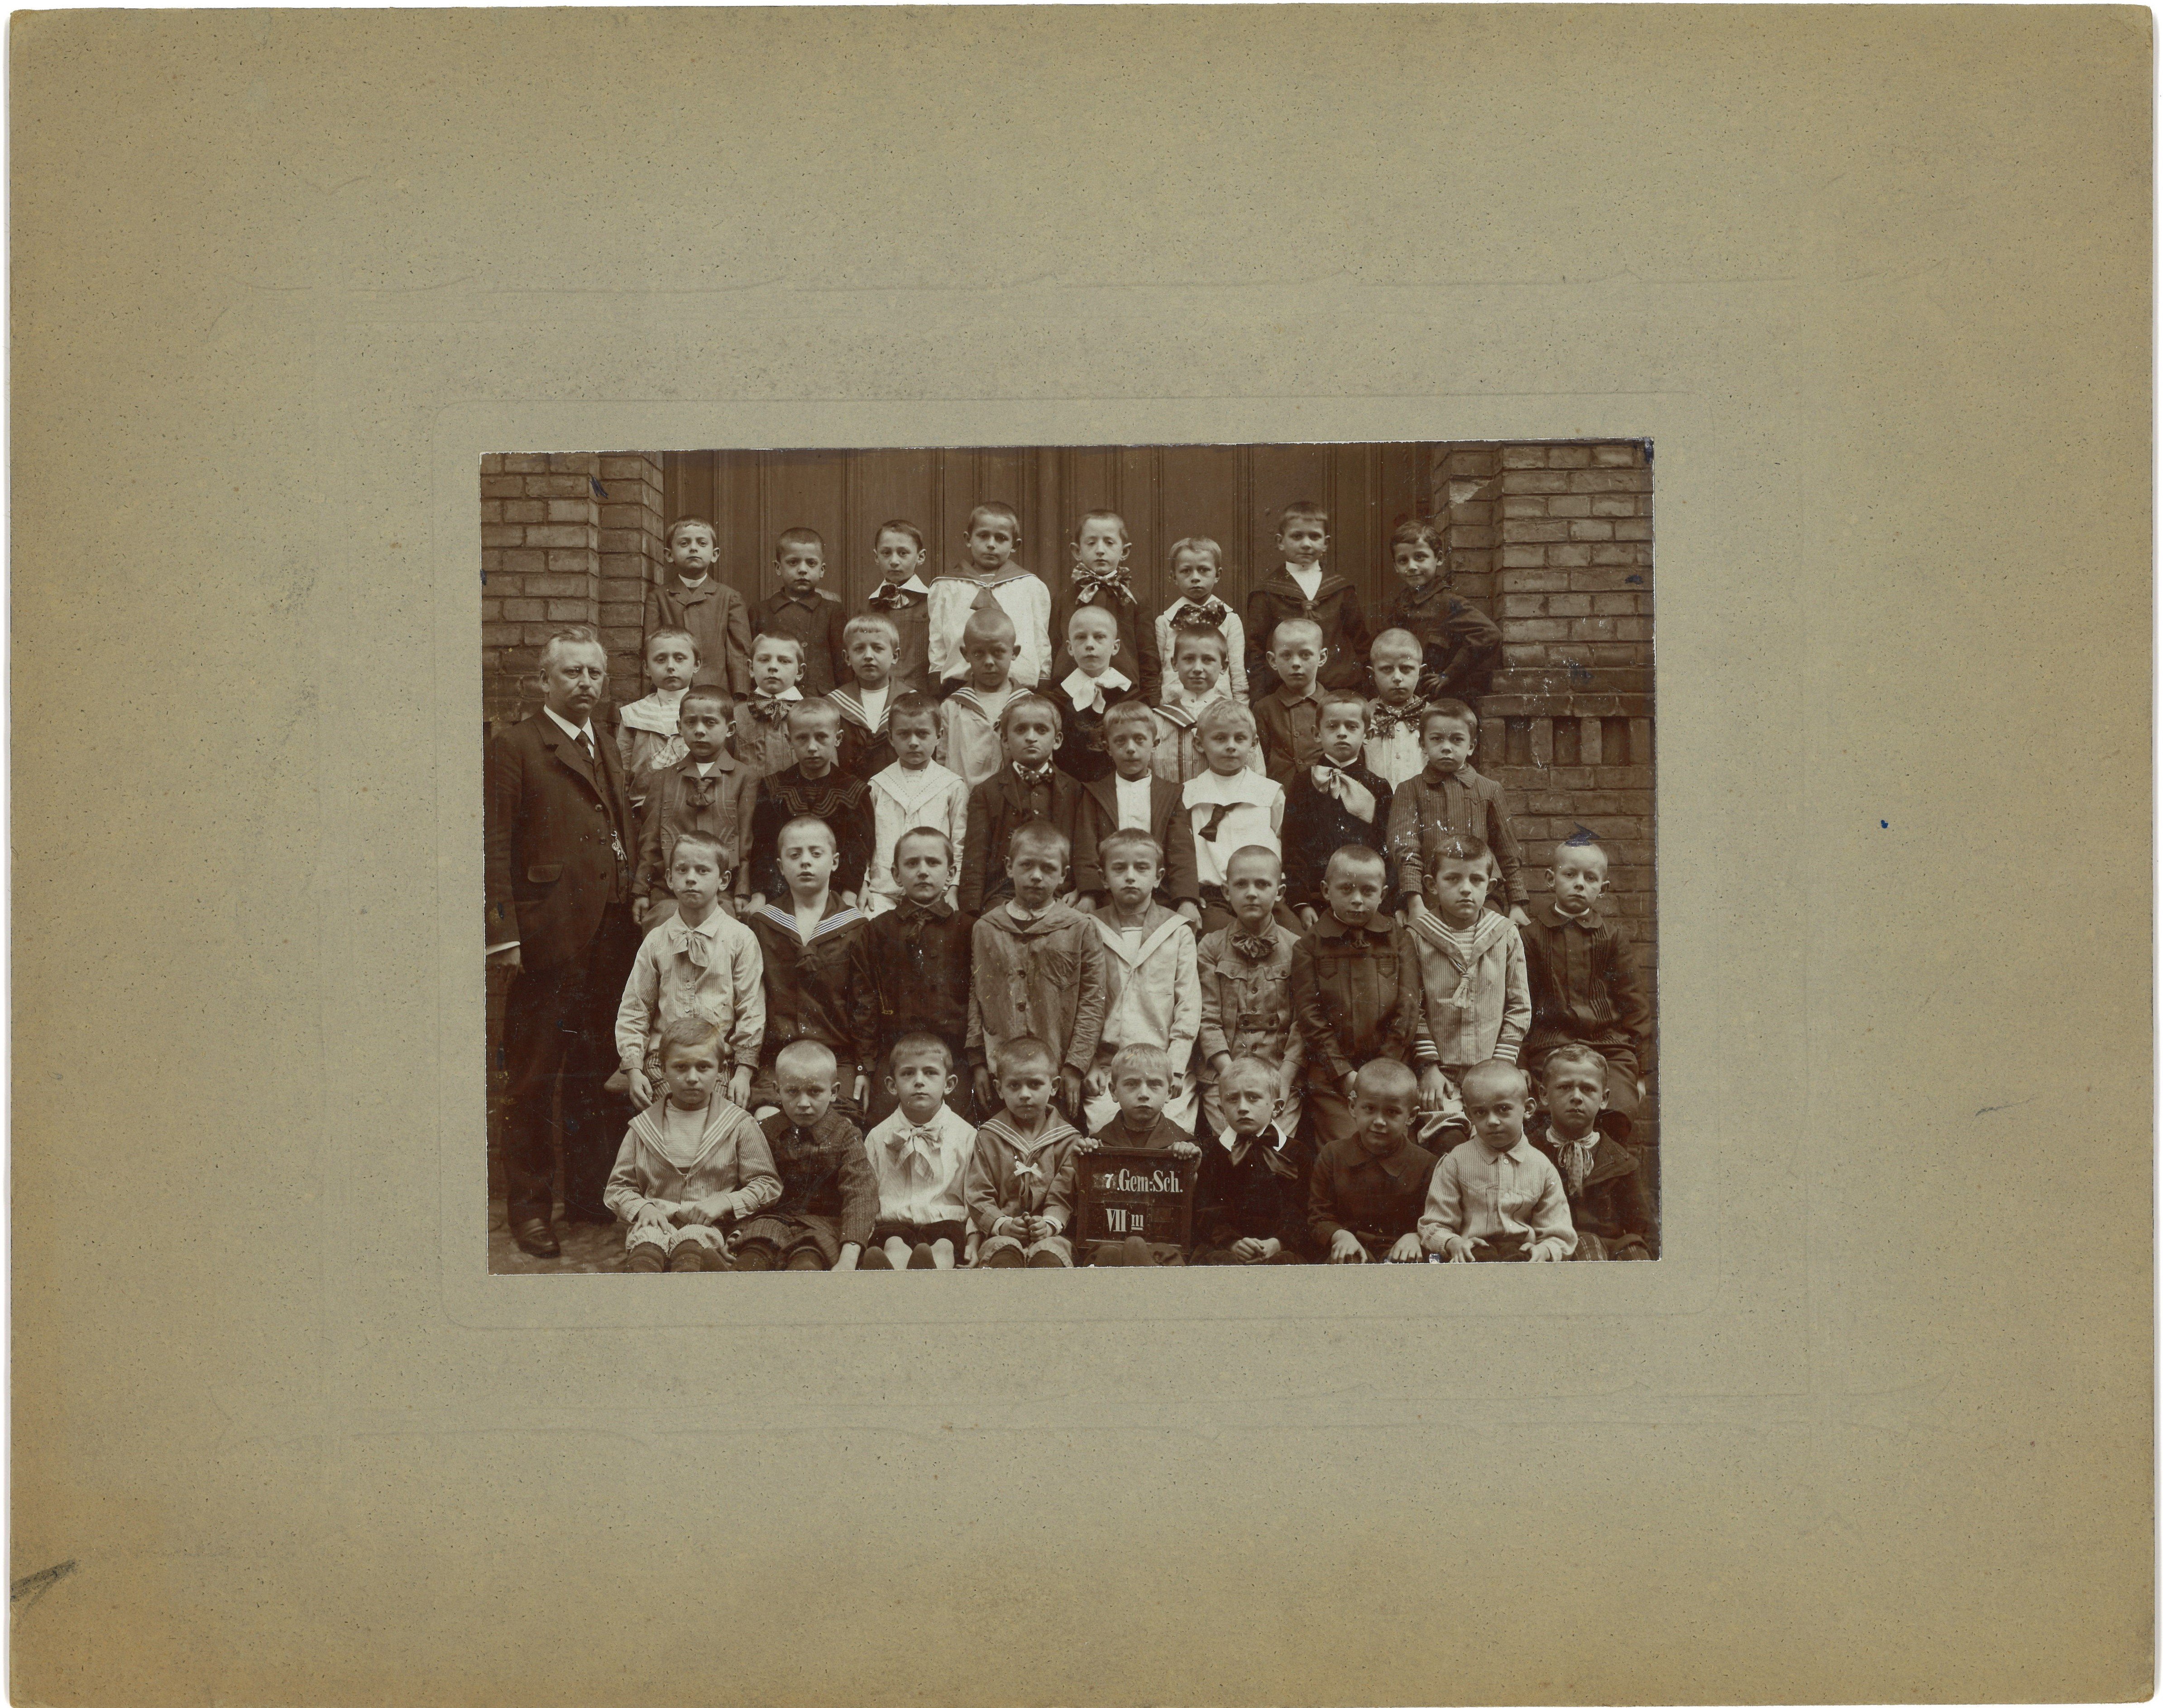 Berlin-Kreuzberg: Klassenfoto der 7. Gemeindeschule 1907 (Landesgeschichtliche Vereinigung für die Mark Brandenburg e.V., Archiv CC BY)